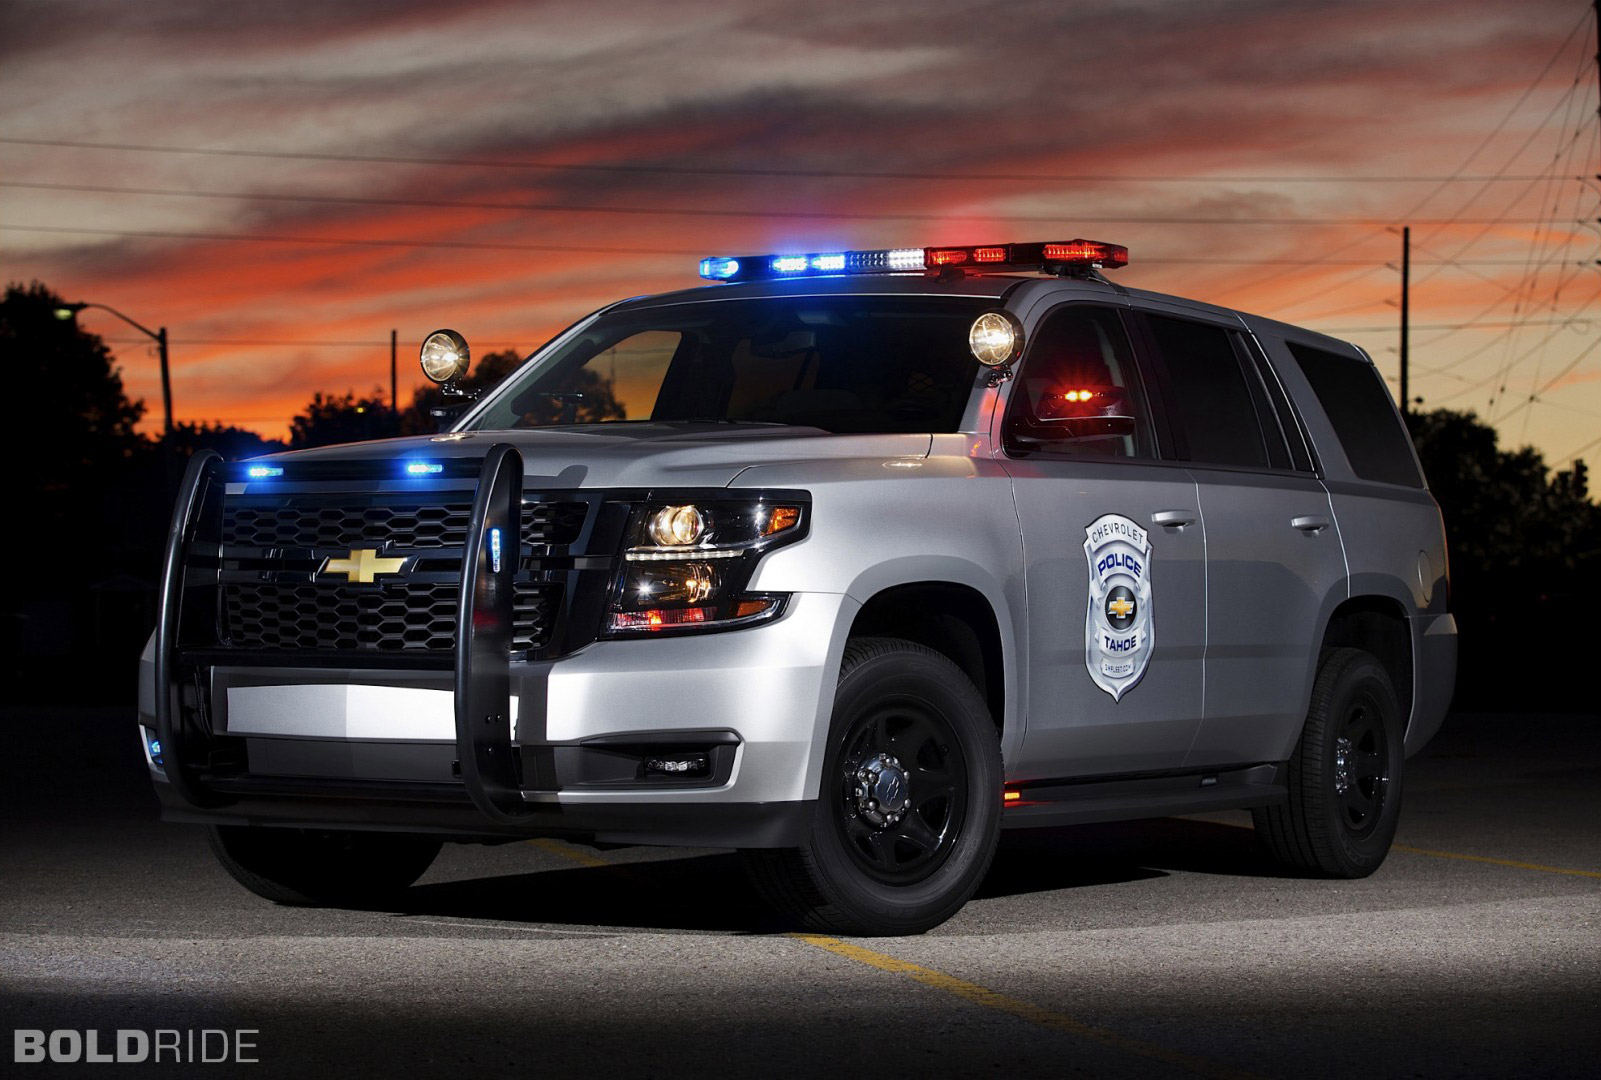 2021 Chevrolet Tahoe Police Interceptor is in the Works ...